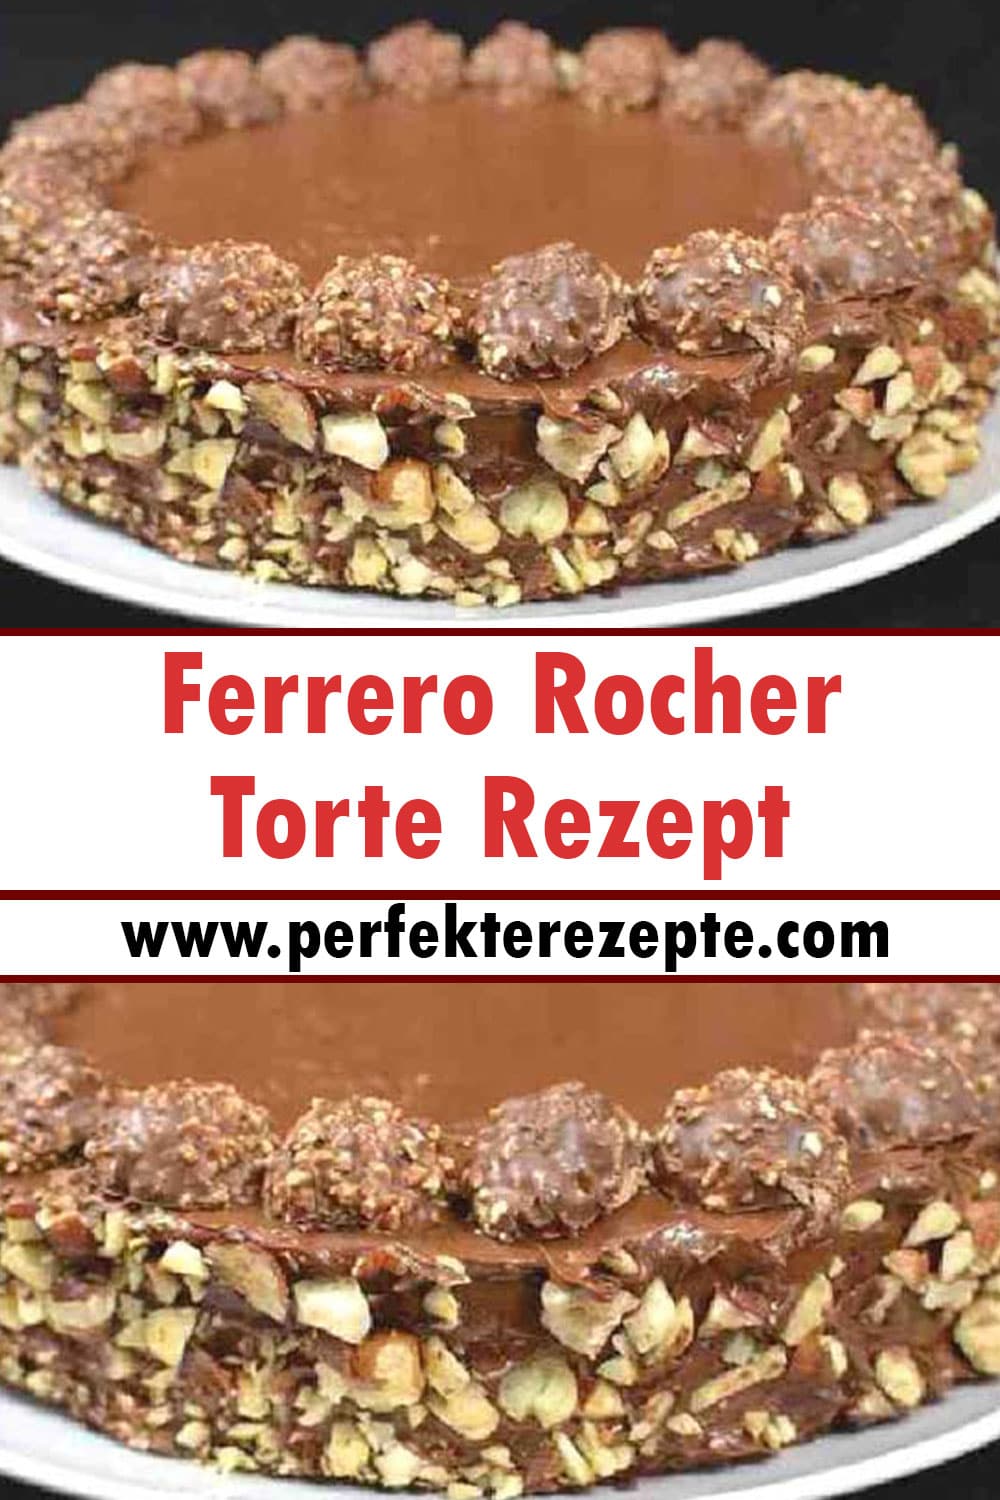 in 20 minuten fertig und ohne backen, Ferrero Rocher Torte Rezept